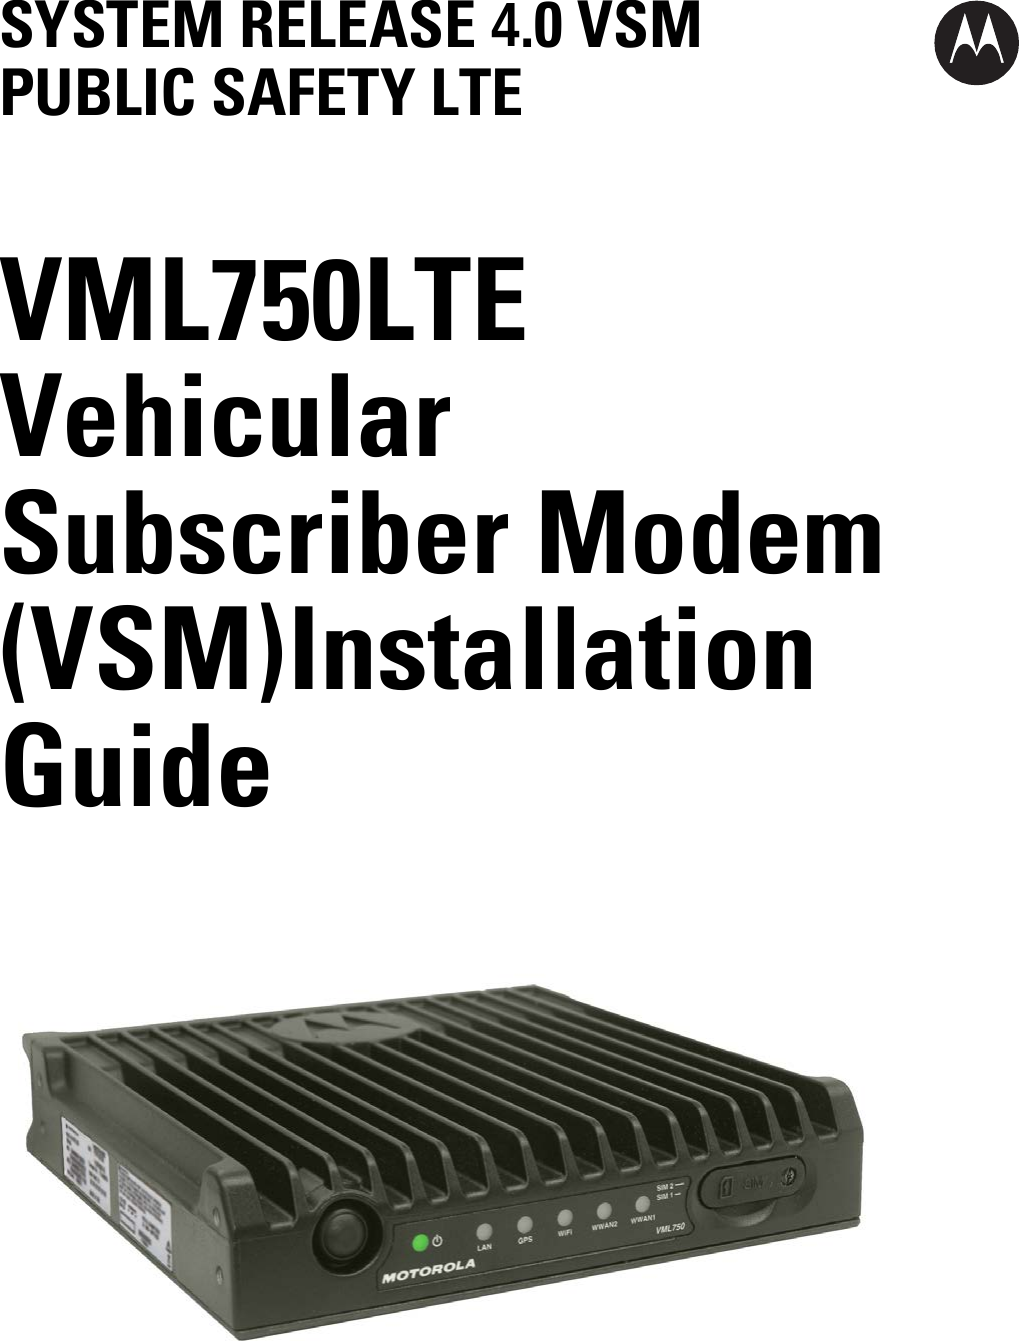 SYSTEM RELEASE 4.0 VSM PUBLIC SAFETY LTE VML750 LTE Vehicular Subscriber Modem (VSM) Installation Guide 